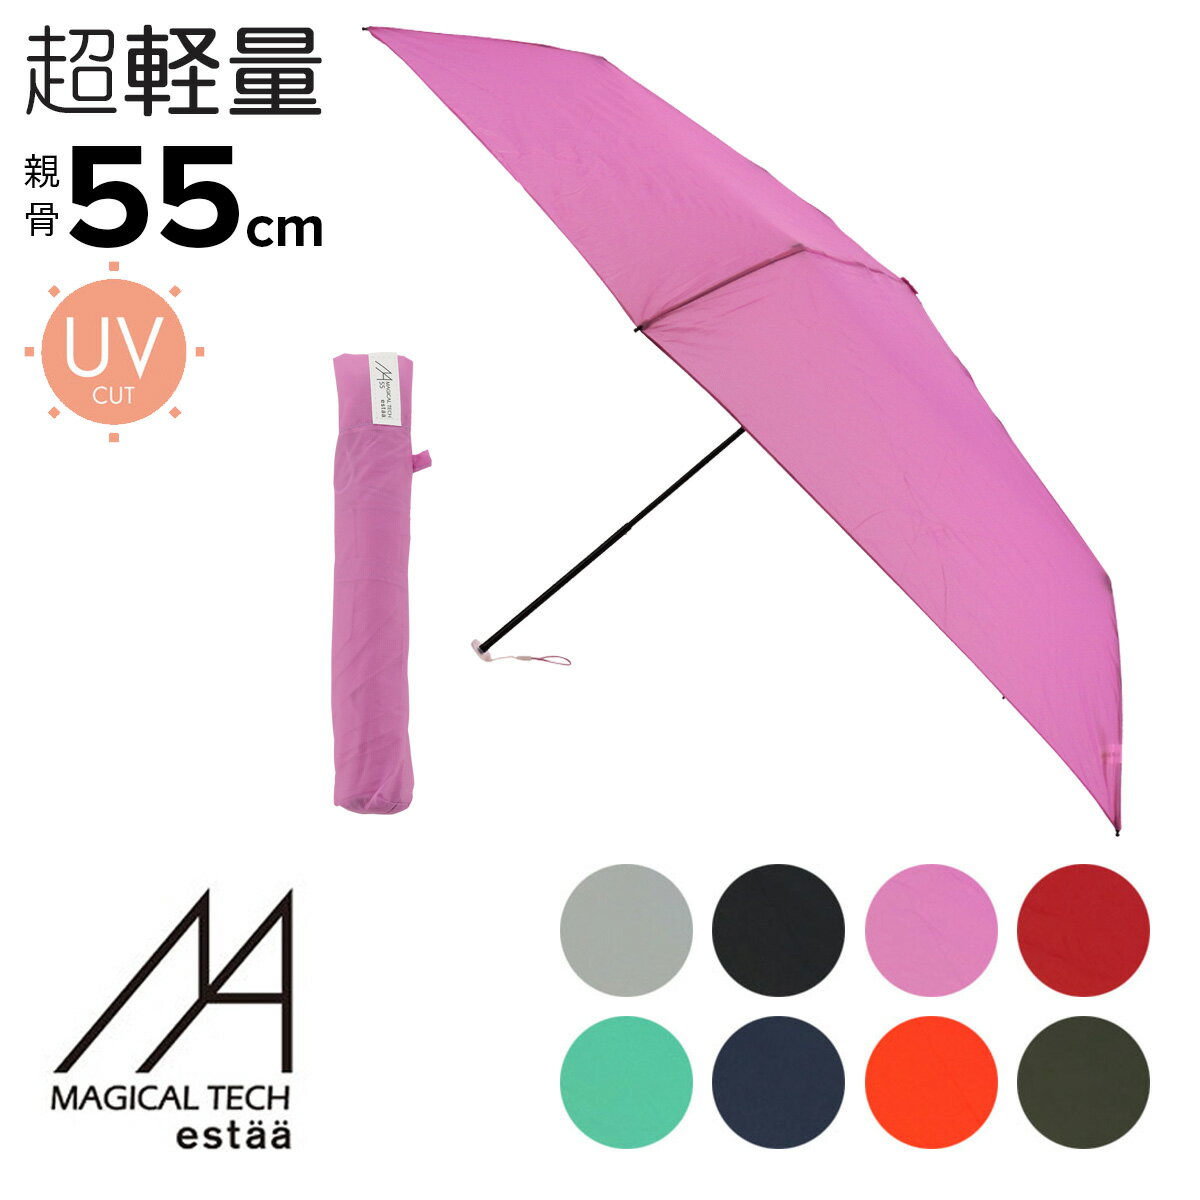 マジカルテック 傘 折りたたみ傘 軽量 メンズ レディース エスタ 手開き式 雨傘 31-230-10256-02 Magical Tech | 晴雨兼用 UVカット 軽い コンパクト 無地